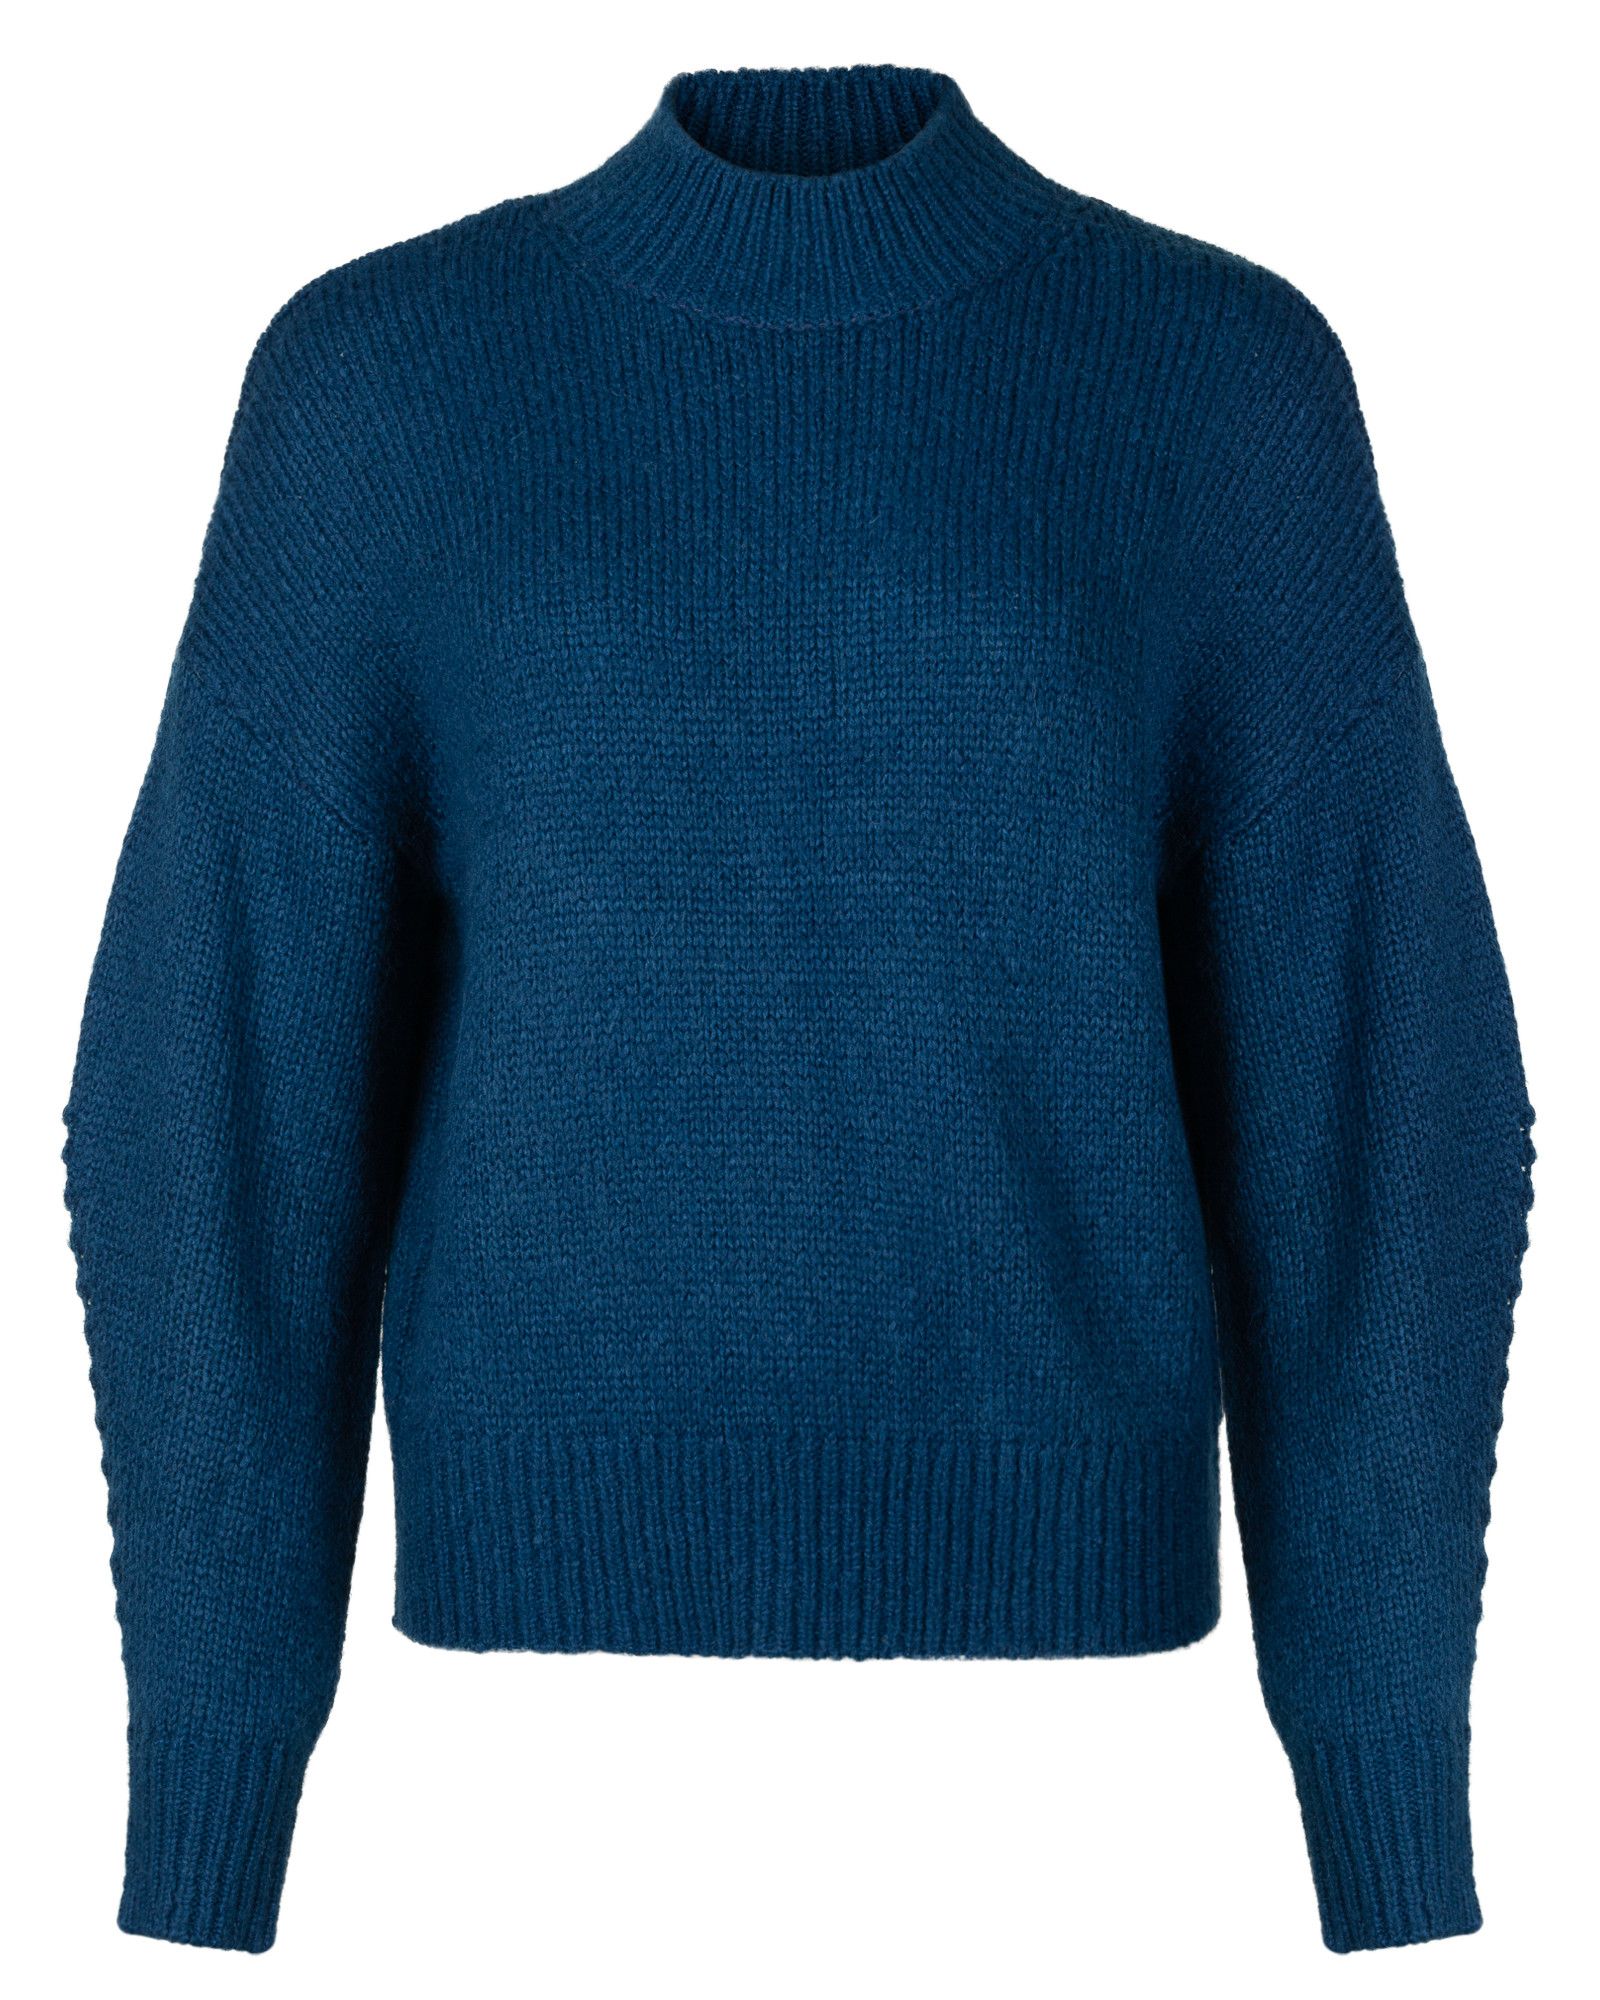 Highland Navy Blue Knitted Jumper | Oliver Bonas